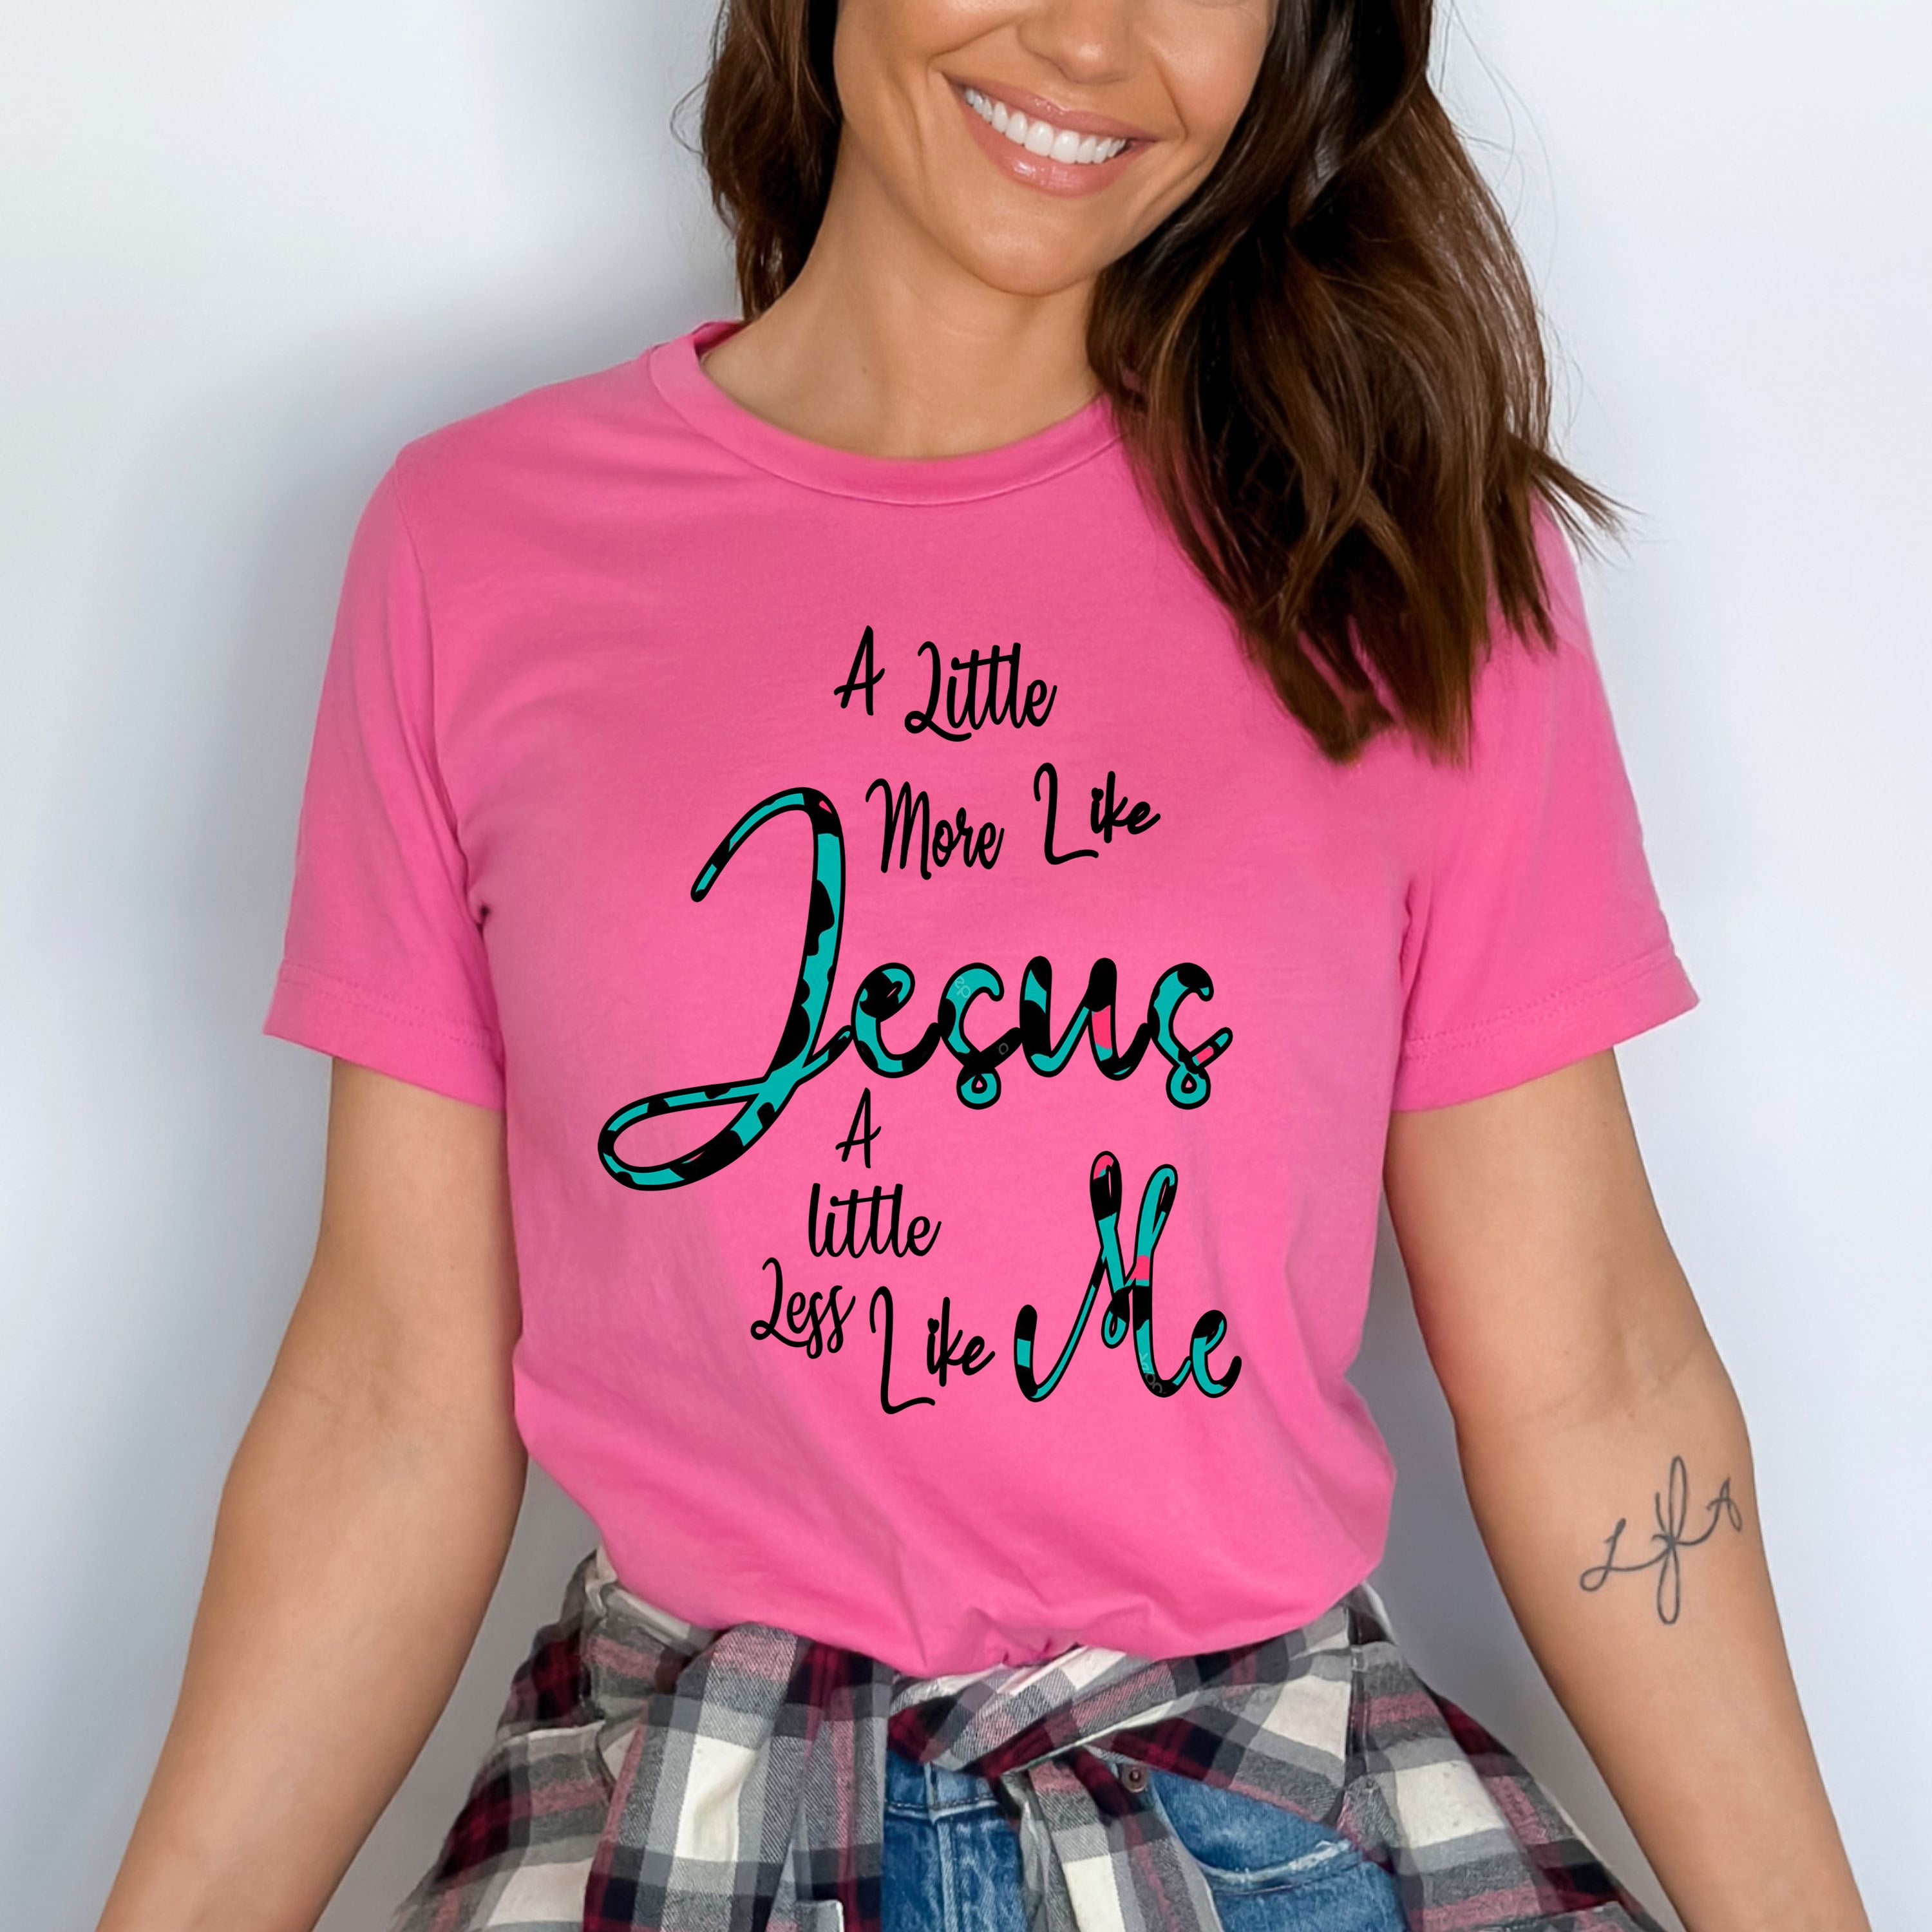 "A Little more like Jesus"